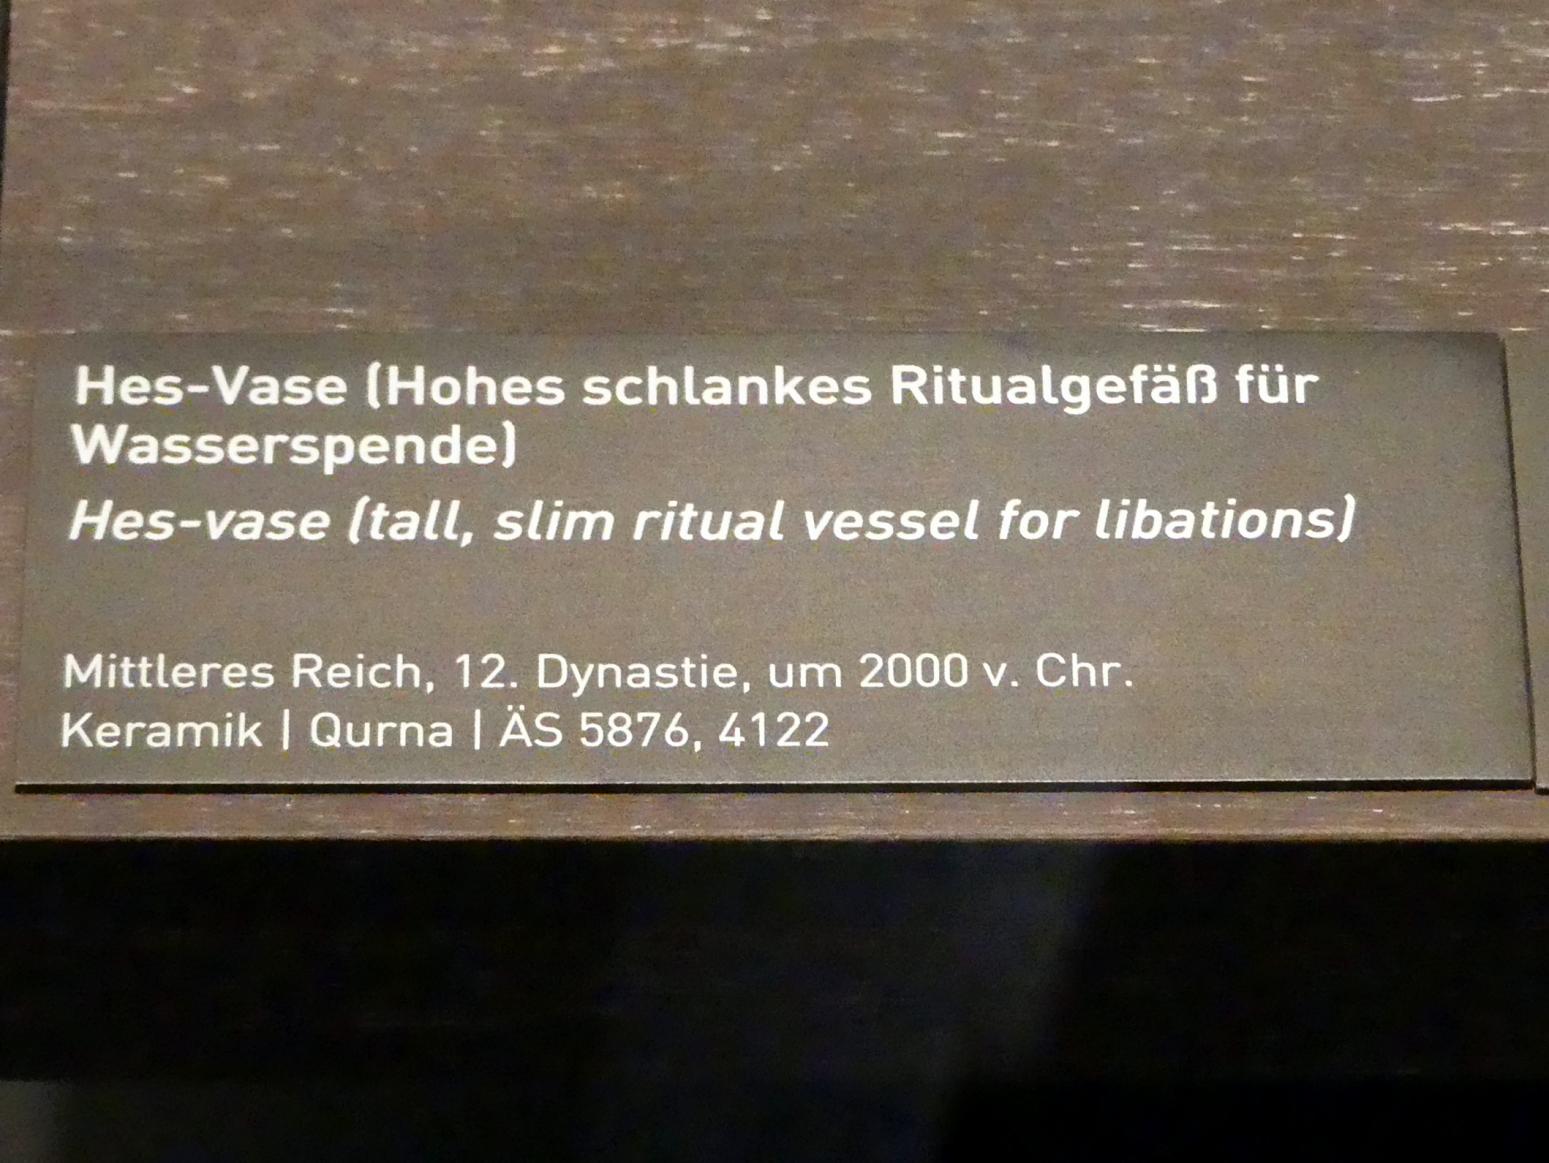 Hes-Vase (Hohes schlankes Ritualgefäß für Wasserspende), 12. Dynastie, 1678 - 1634 v. Chr., 2000 v. Chr., Bild 2/2